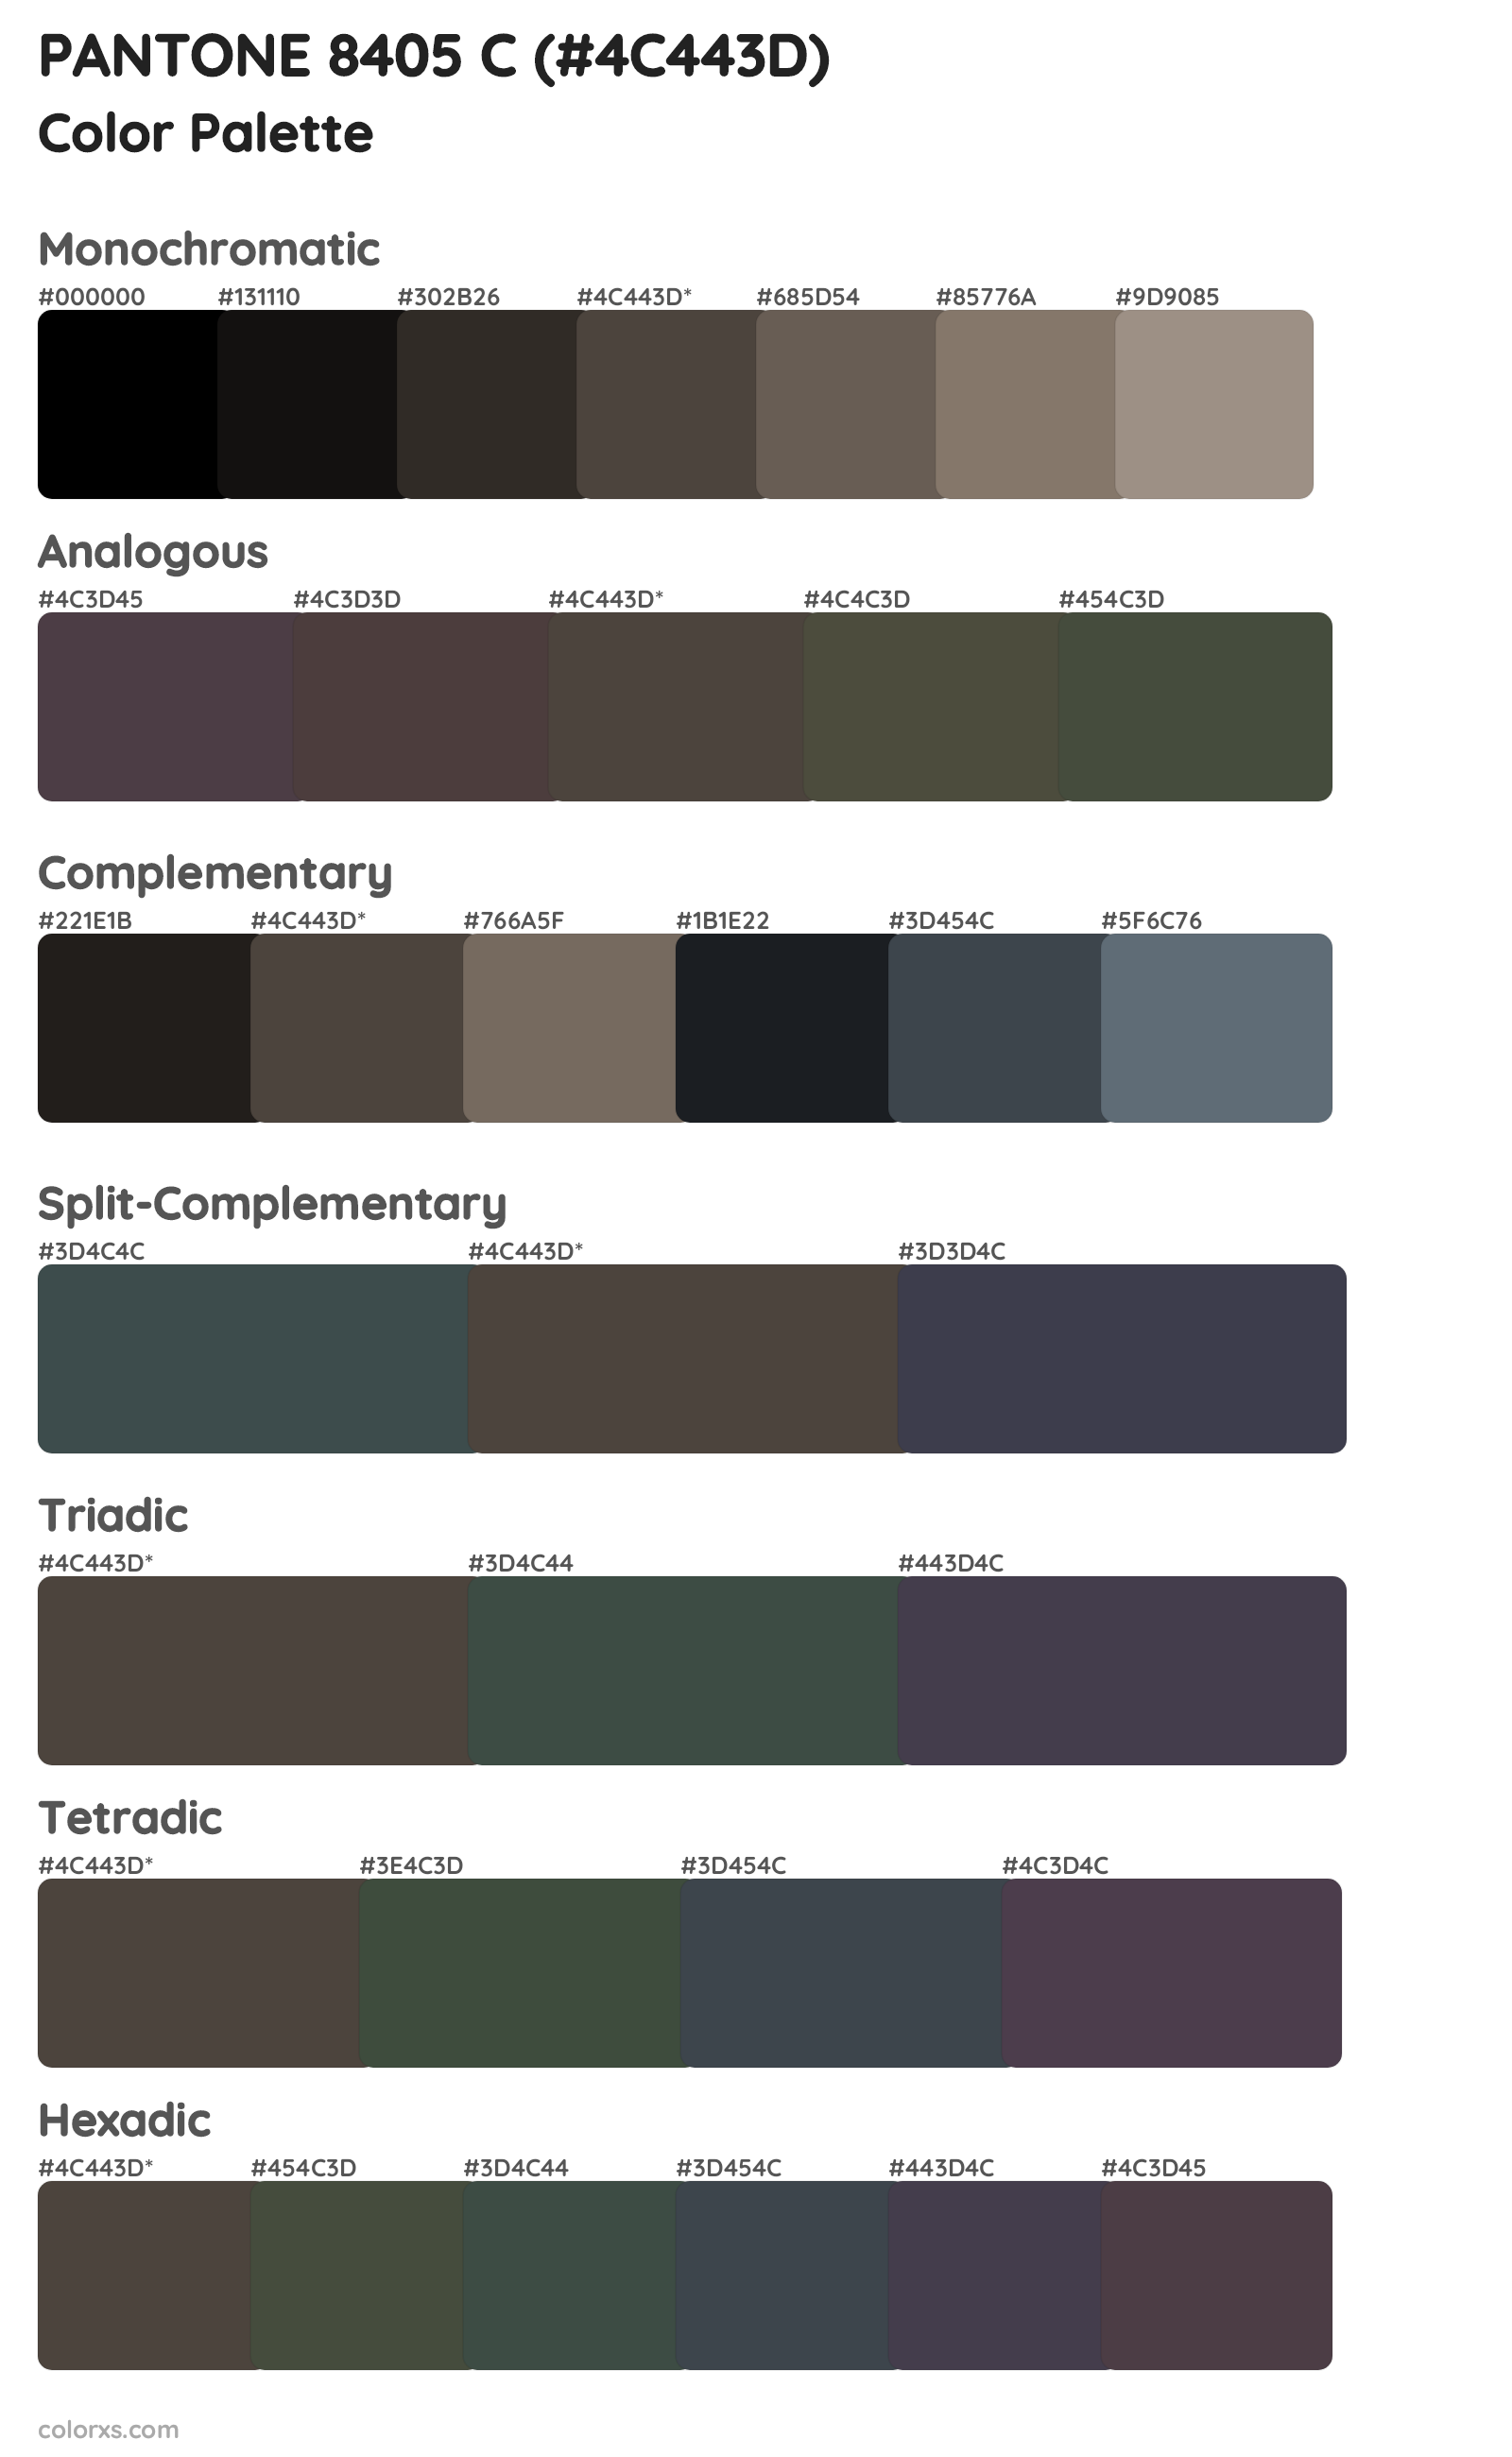 PANTONE 8405 C Color Scheme Palettes